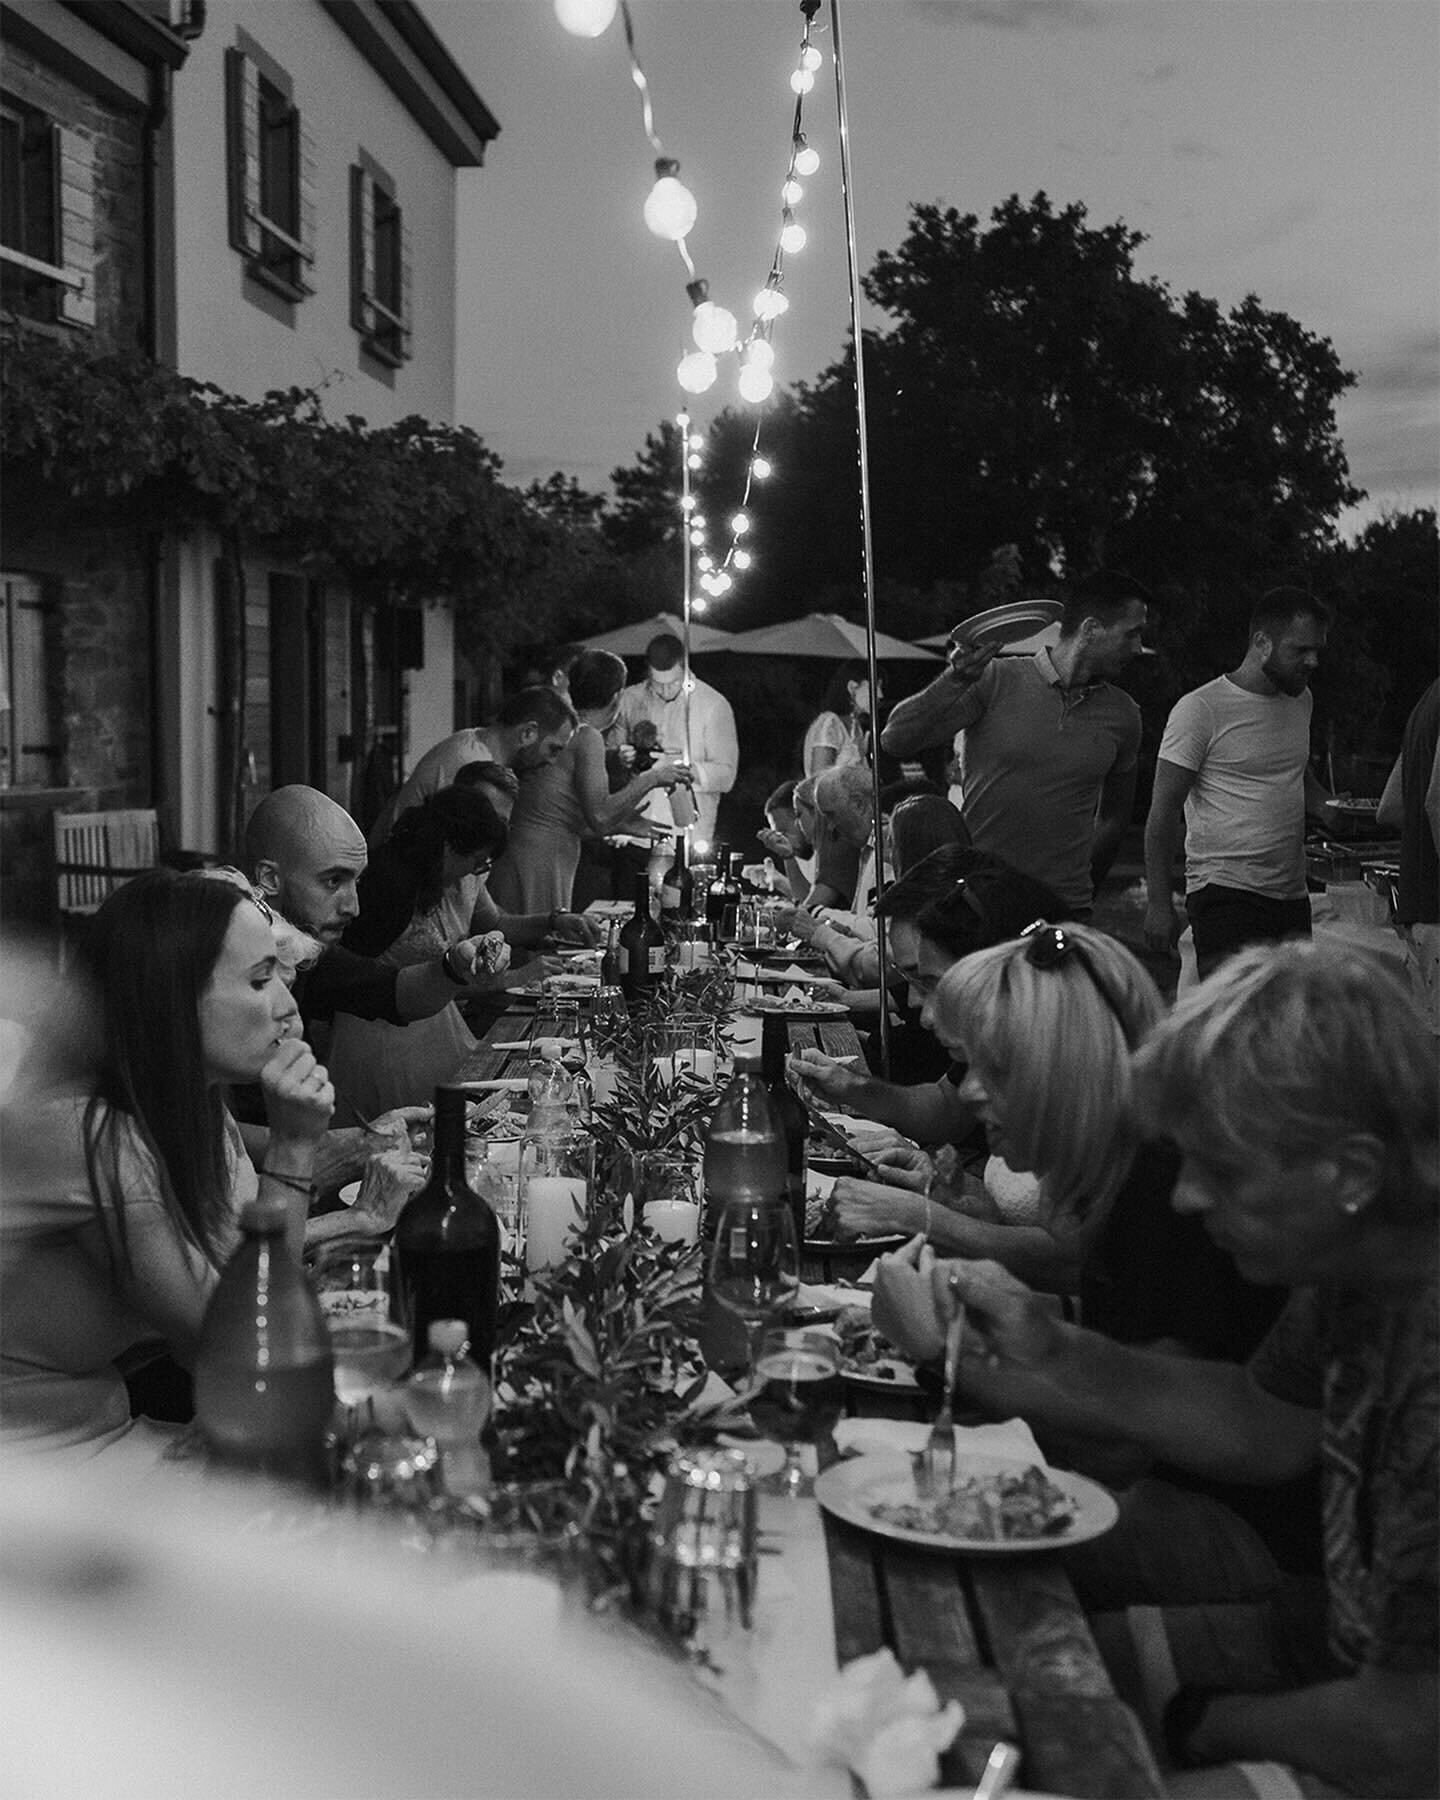 Polna miza, delikatni čeveljci &amp; razigrani svati, uživajo lajf na en lu&scaron;kan in topel poletno jesenski dan 🤍

#slovenianweddingphotographer #slovenskiportretnifotografi #porocnifotograf #sloveniawedding